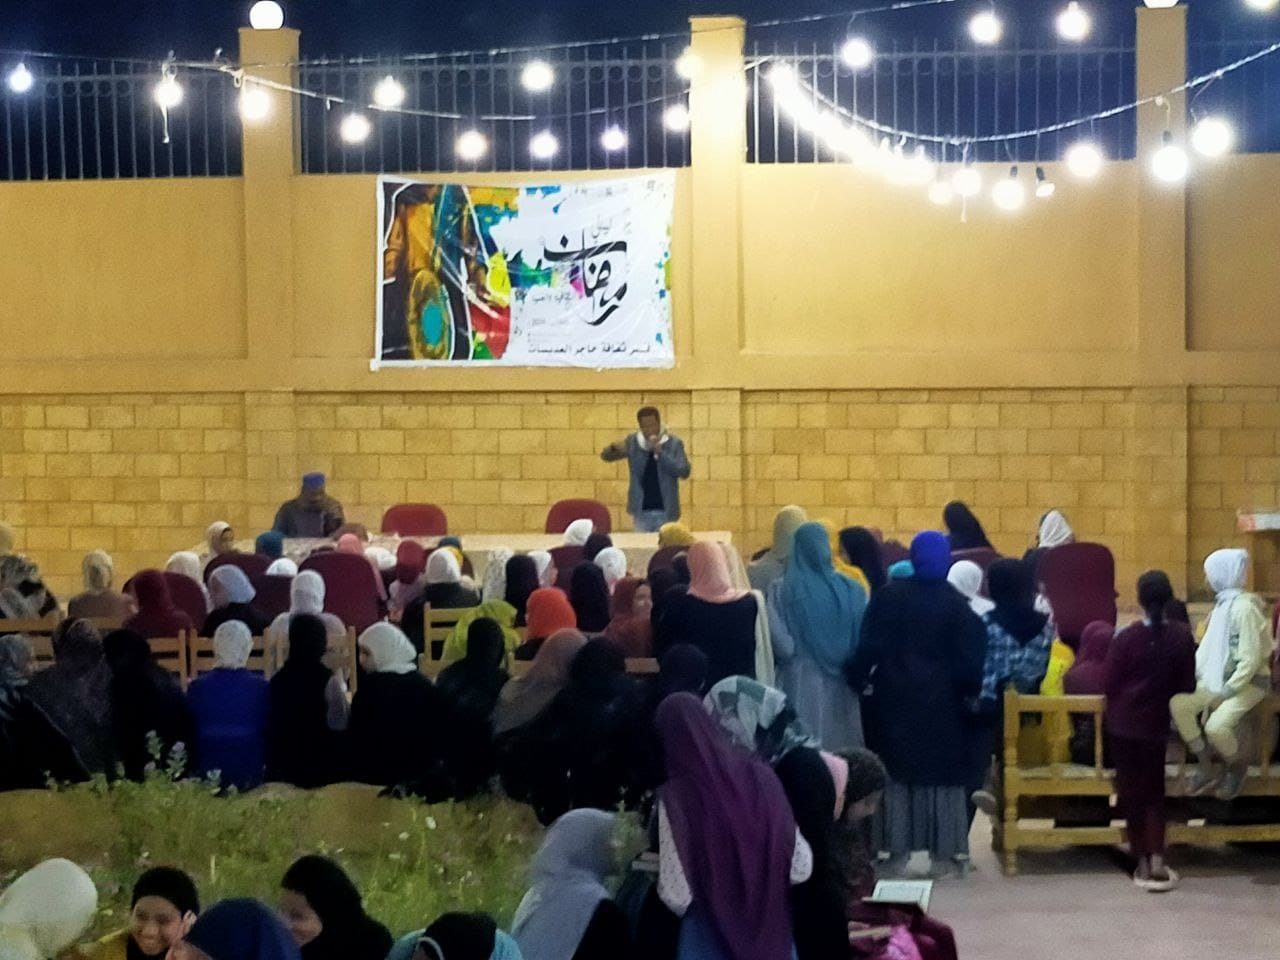 فعاليات أنشطة رمضانية ثقافية لدعم الأسر فى الأقصر